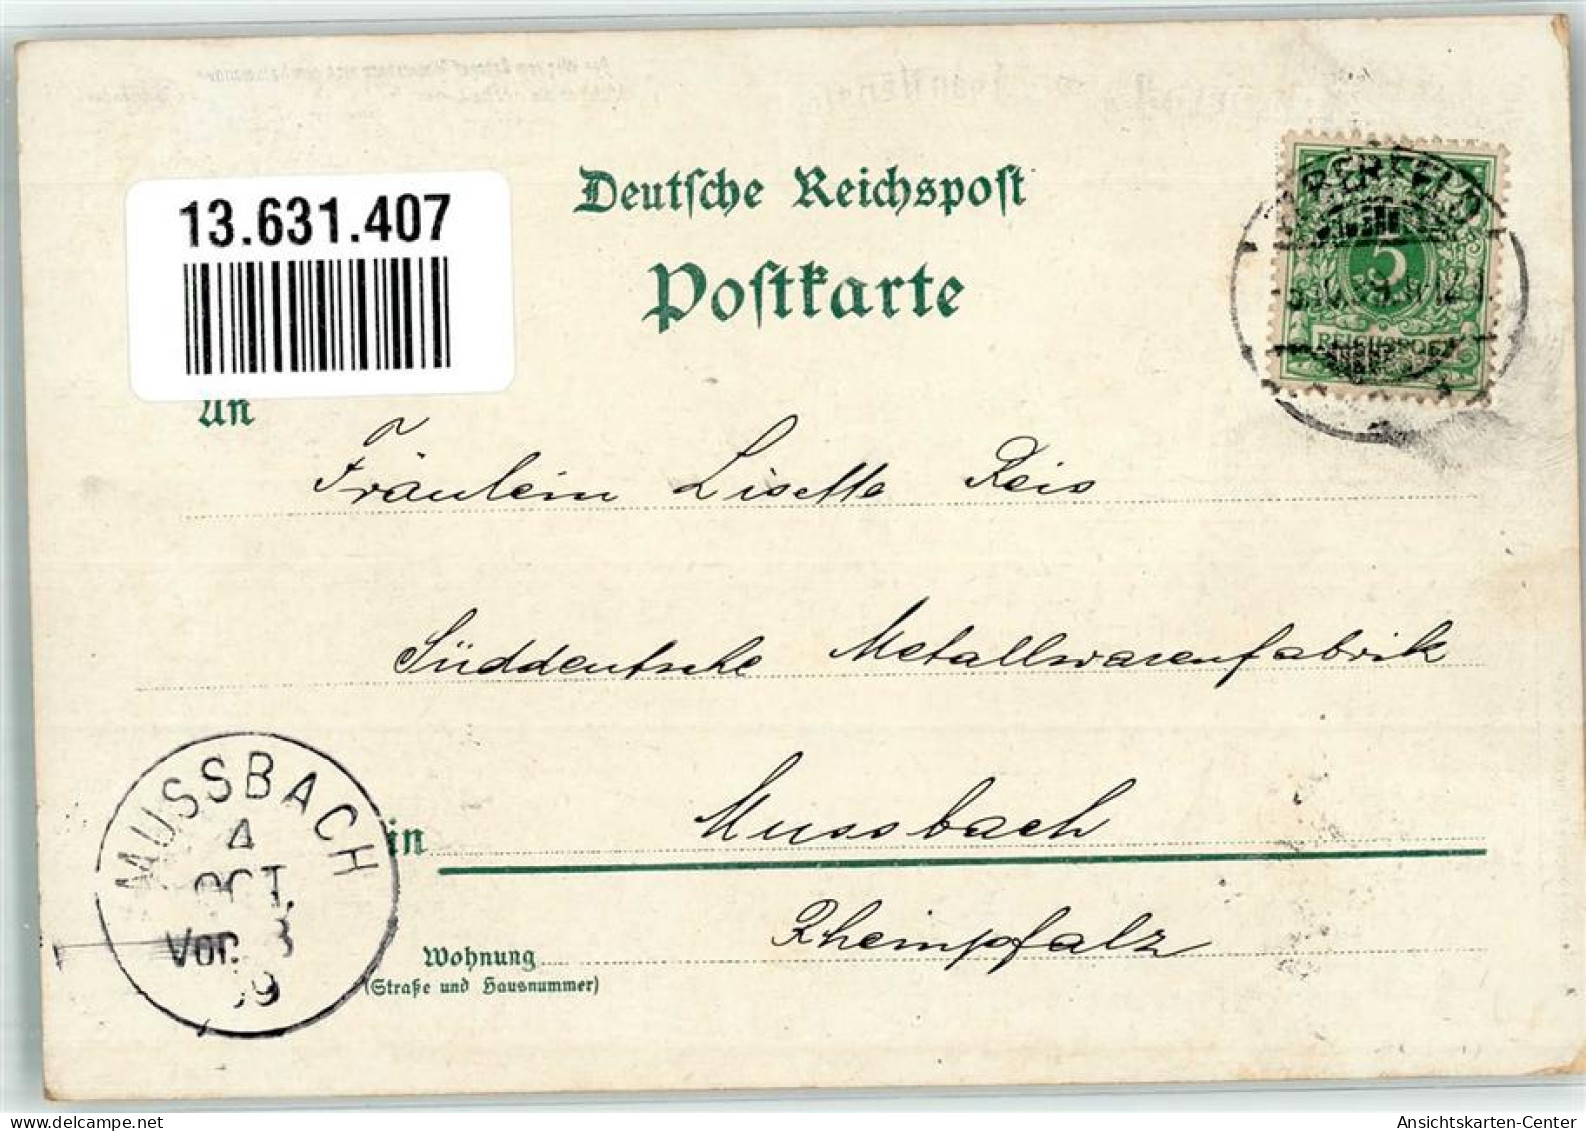 13631407 - Elberfeld - Wuppertal